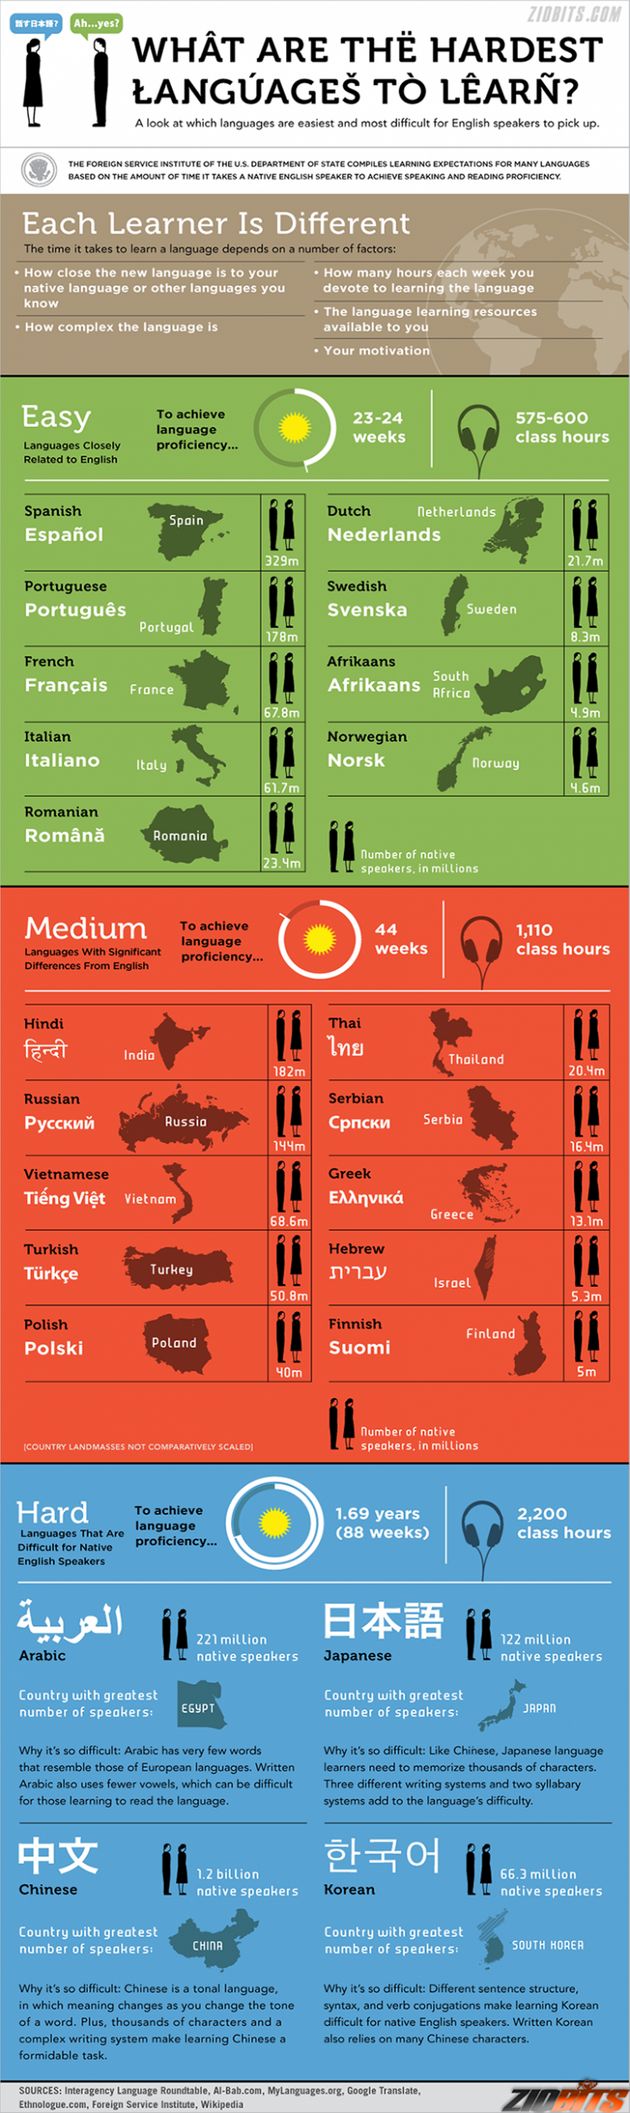 Έρευνα: Ποιες είναι οι πιο δύσκολες γλώσσες του κόσμου; Σε ποια θέση βρίσκονται τα ελληνικά